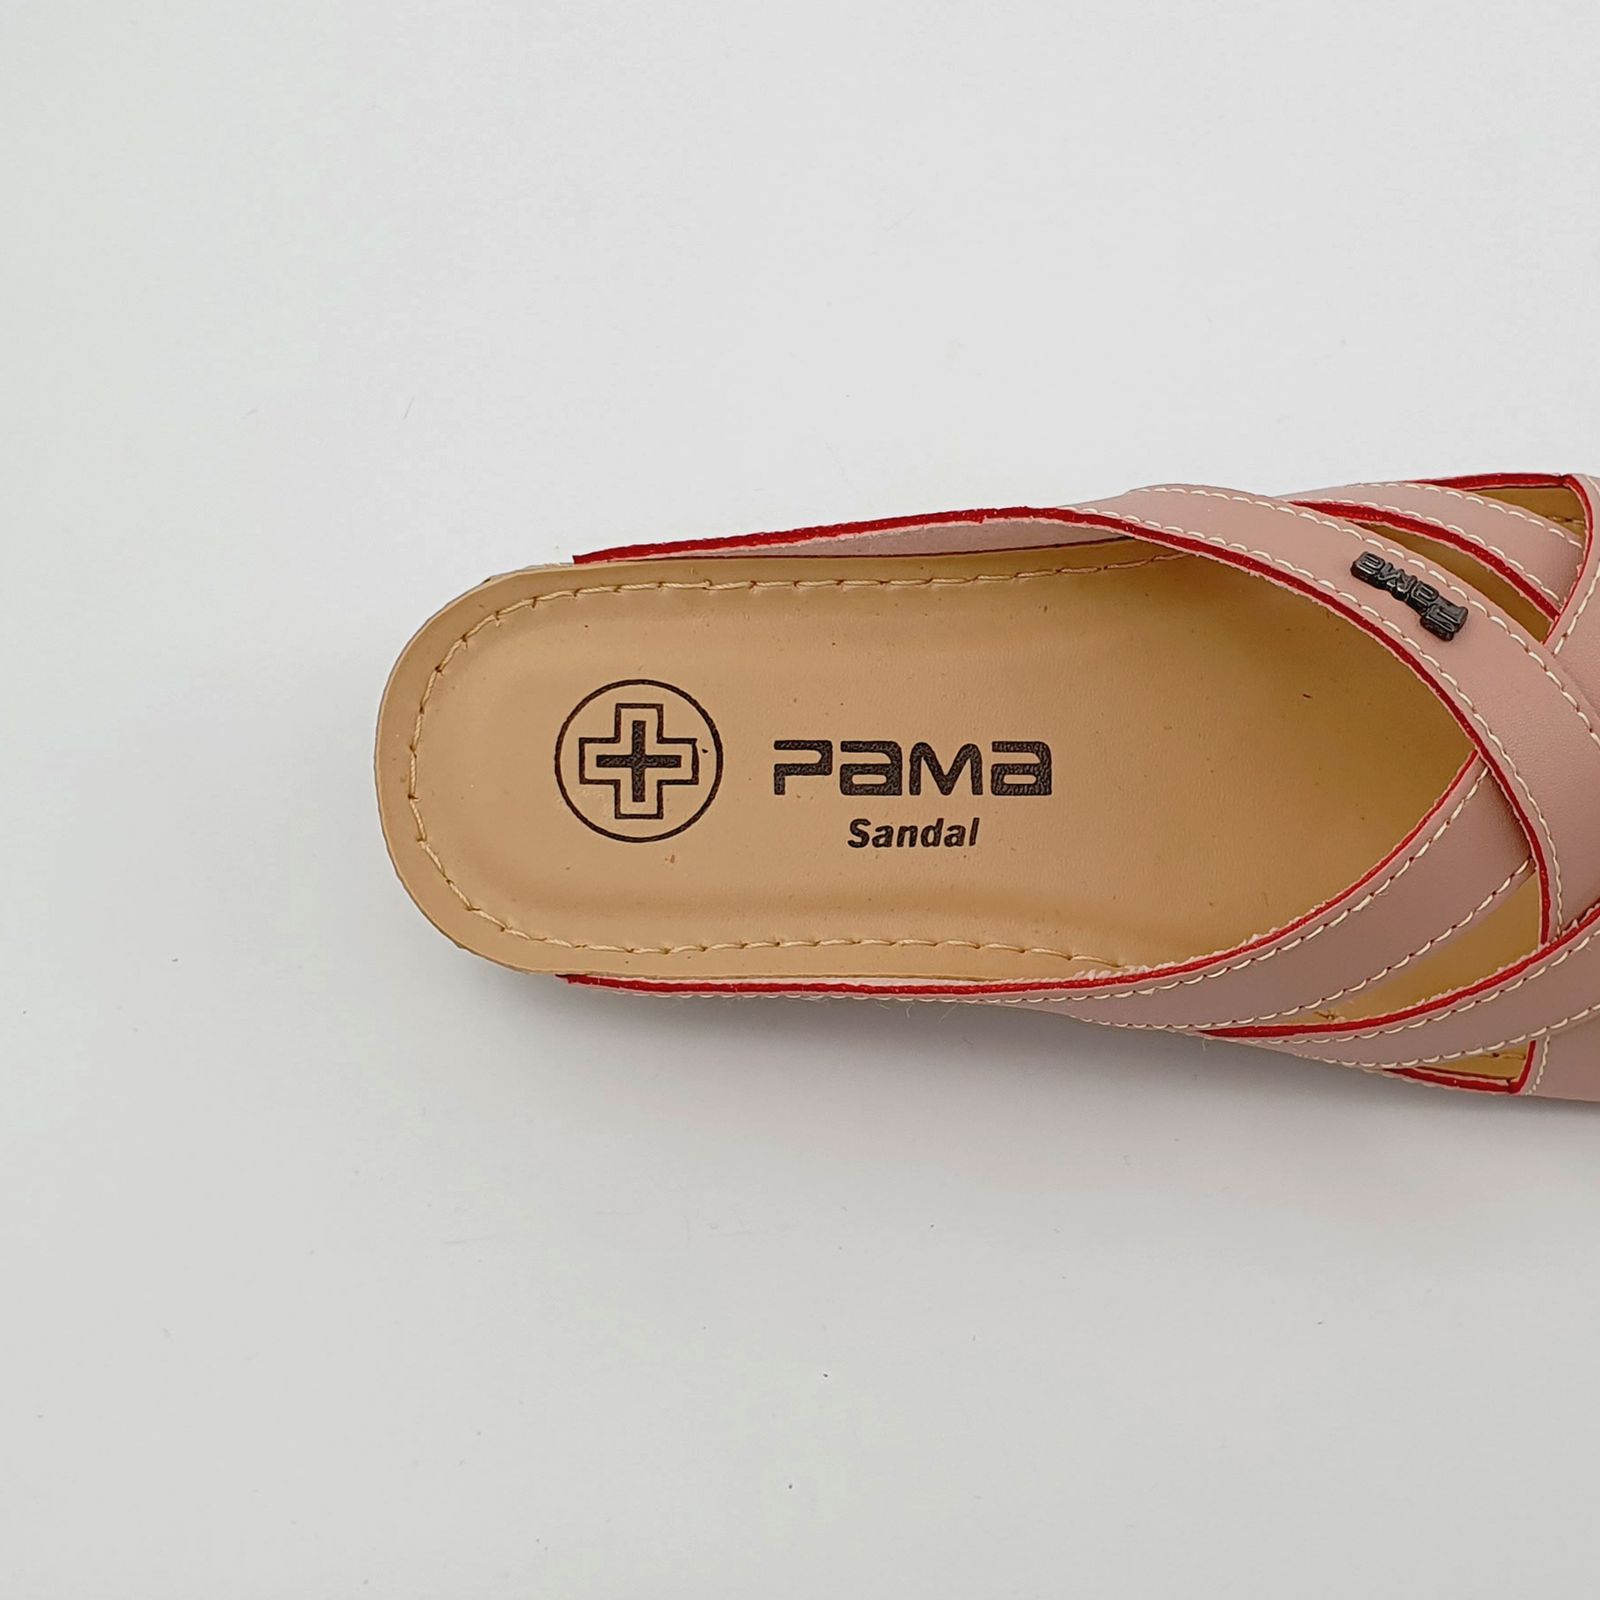 دمپایی زنانه پاما مدل الیکا کد G1691 -  - 7